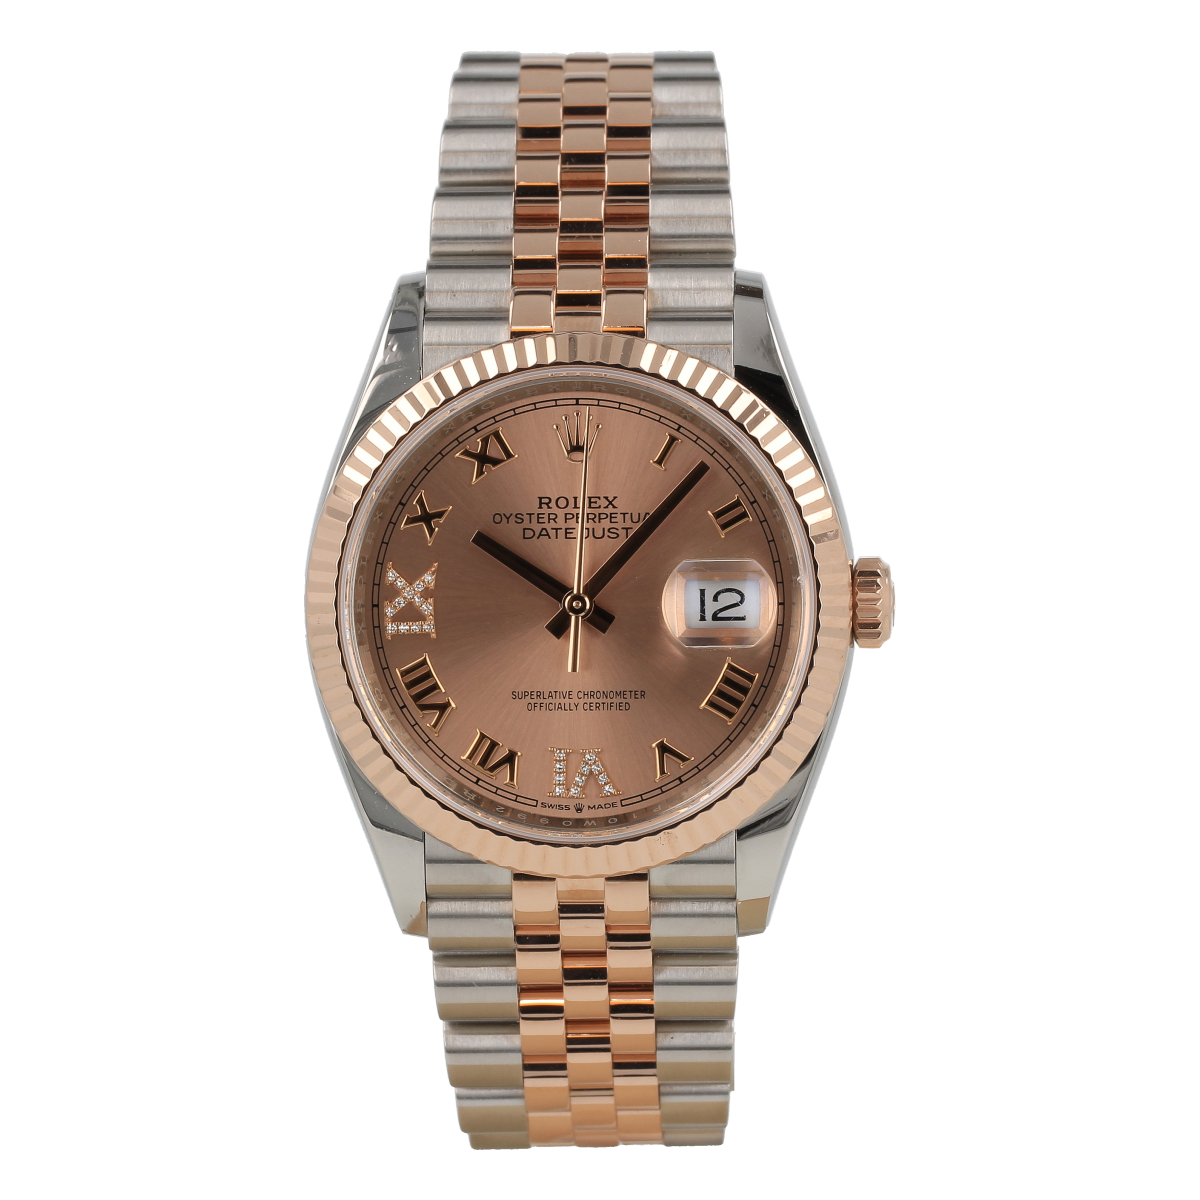 Rolex Datejust 126231 36mm de acero y oro rosa, Esfera rosa, jubilee bracelet | Comprar reloj Rolex de segunda mano